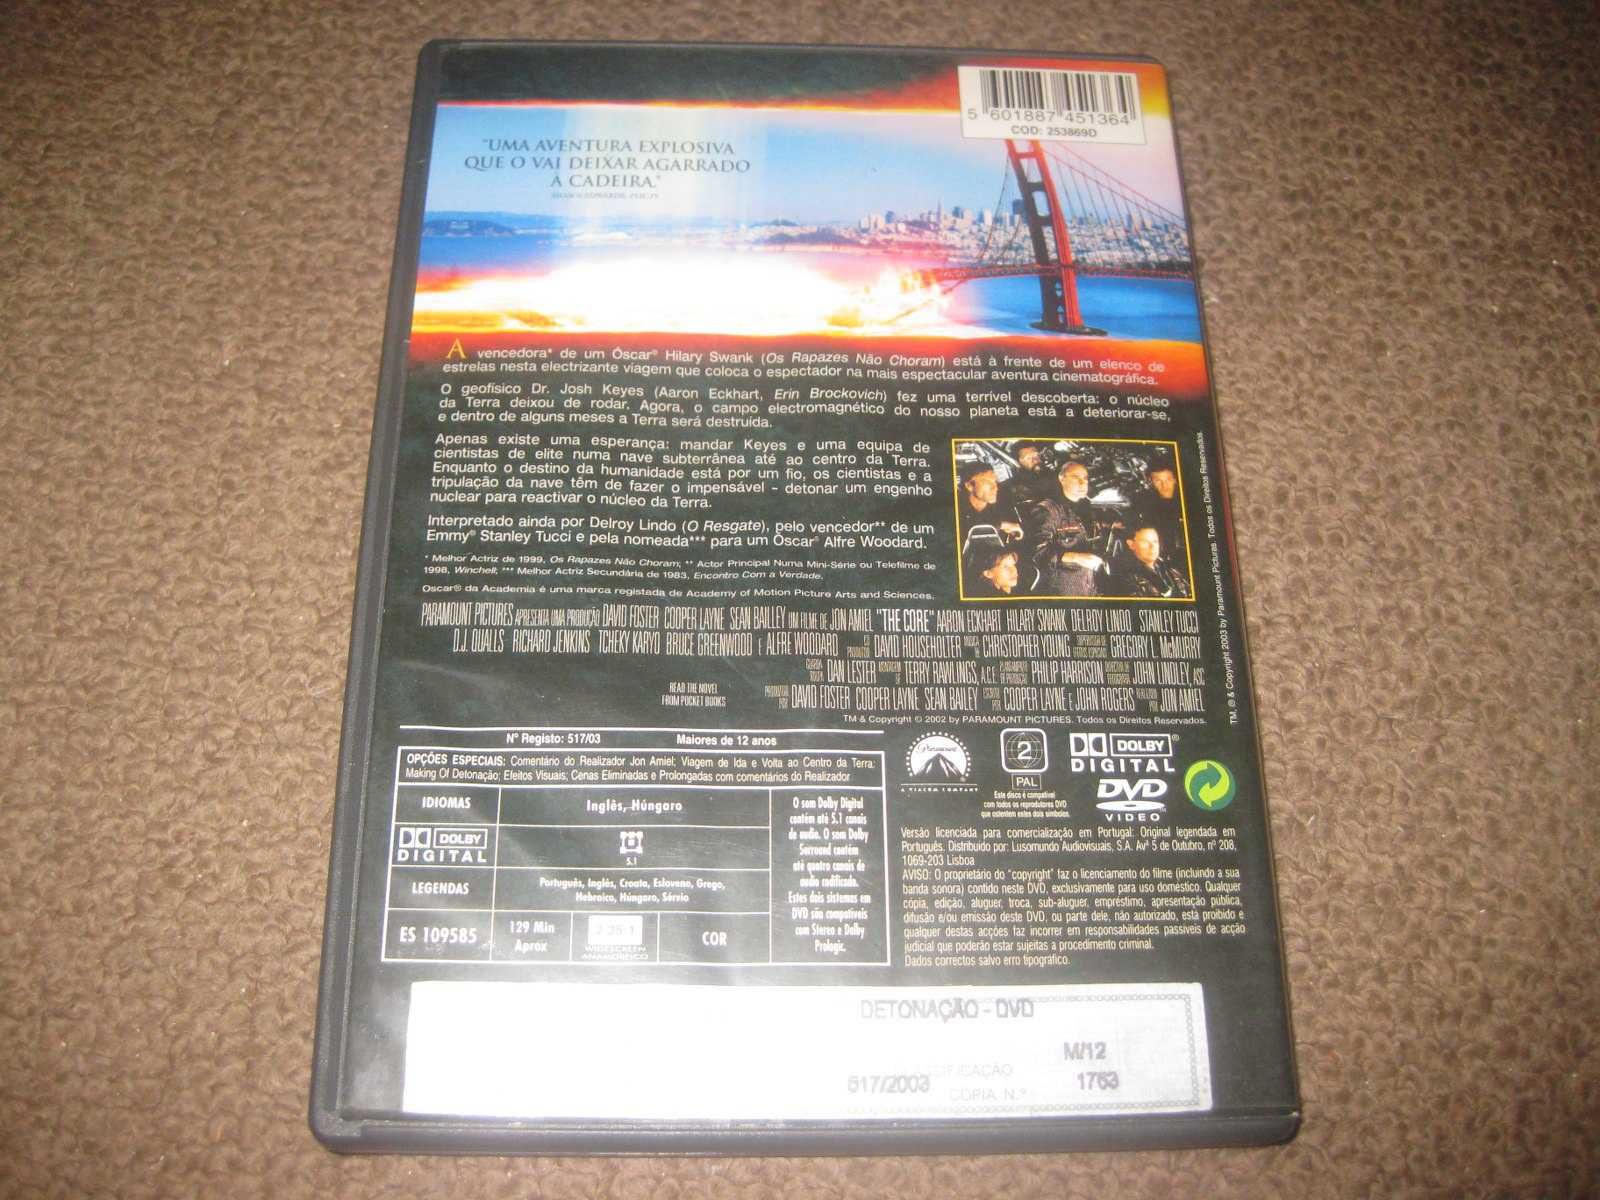 DVD "Detonação" com Aaron Eckhart